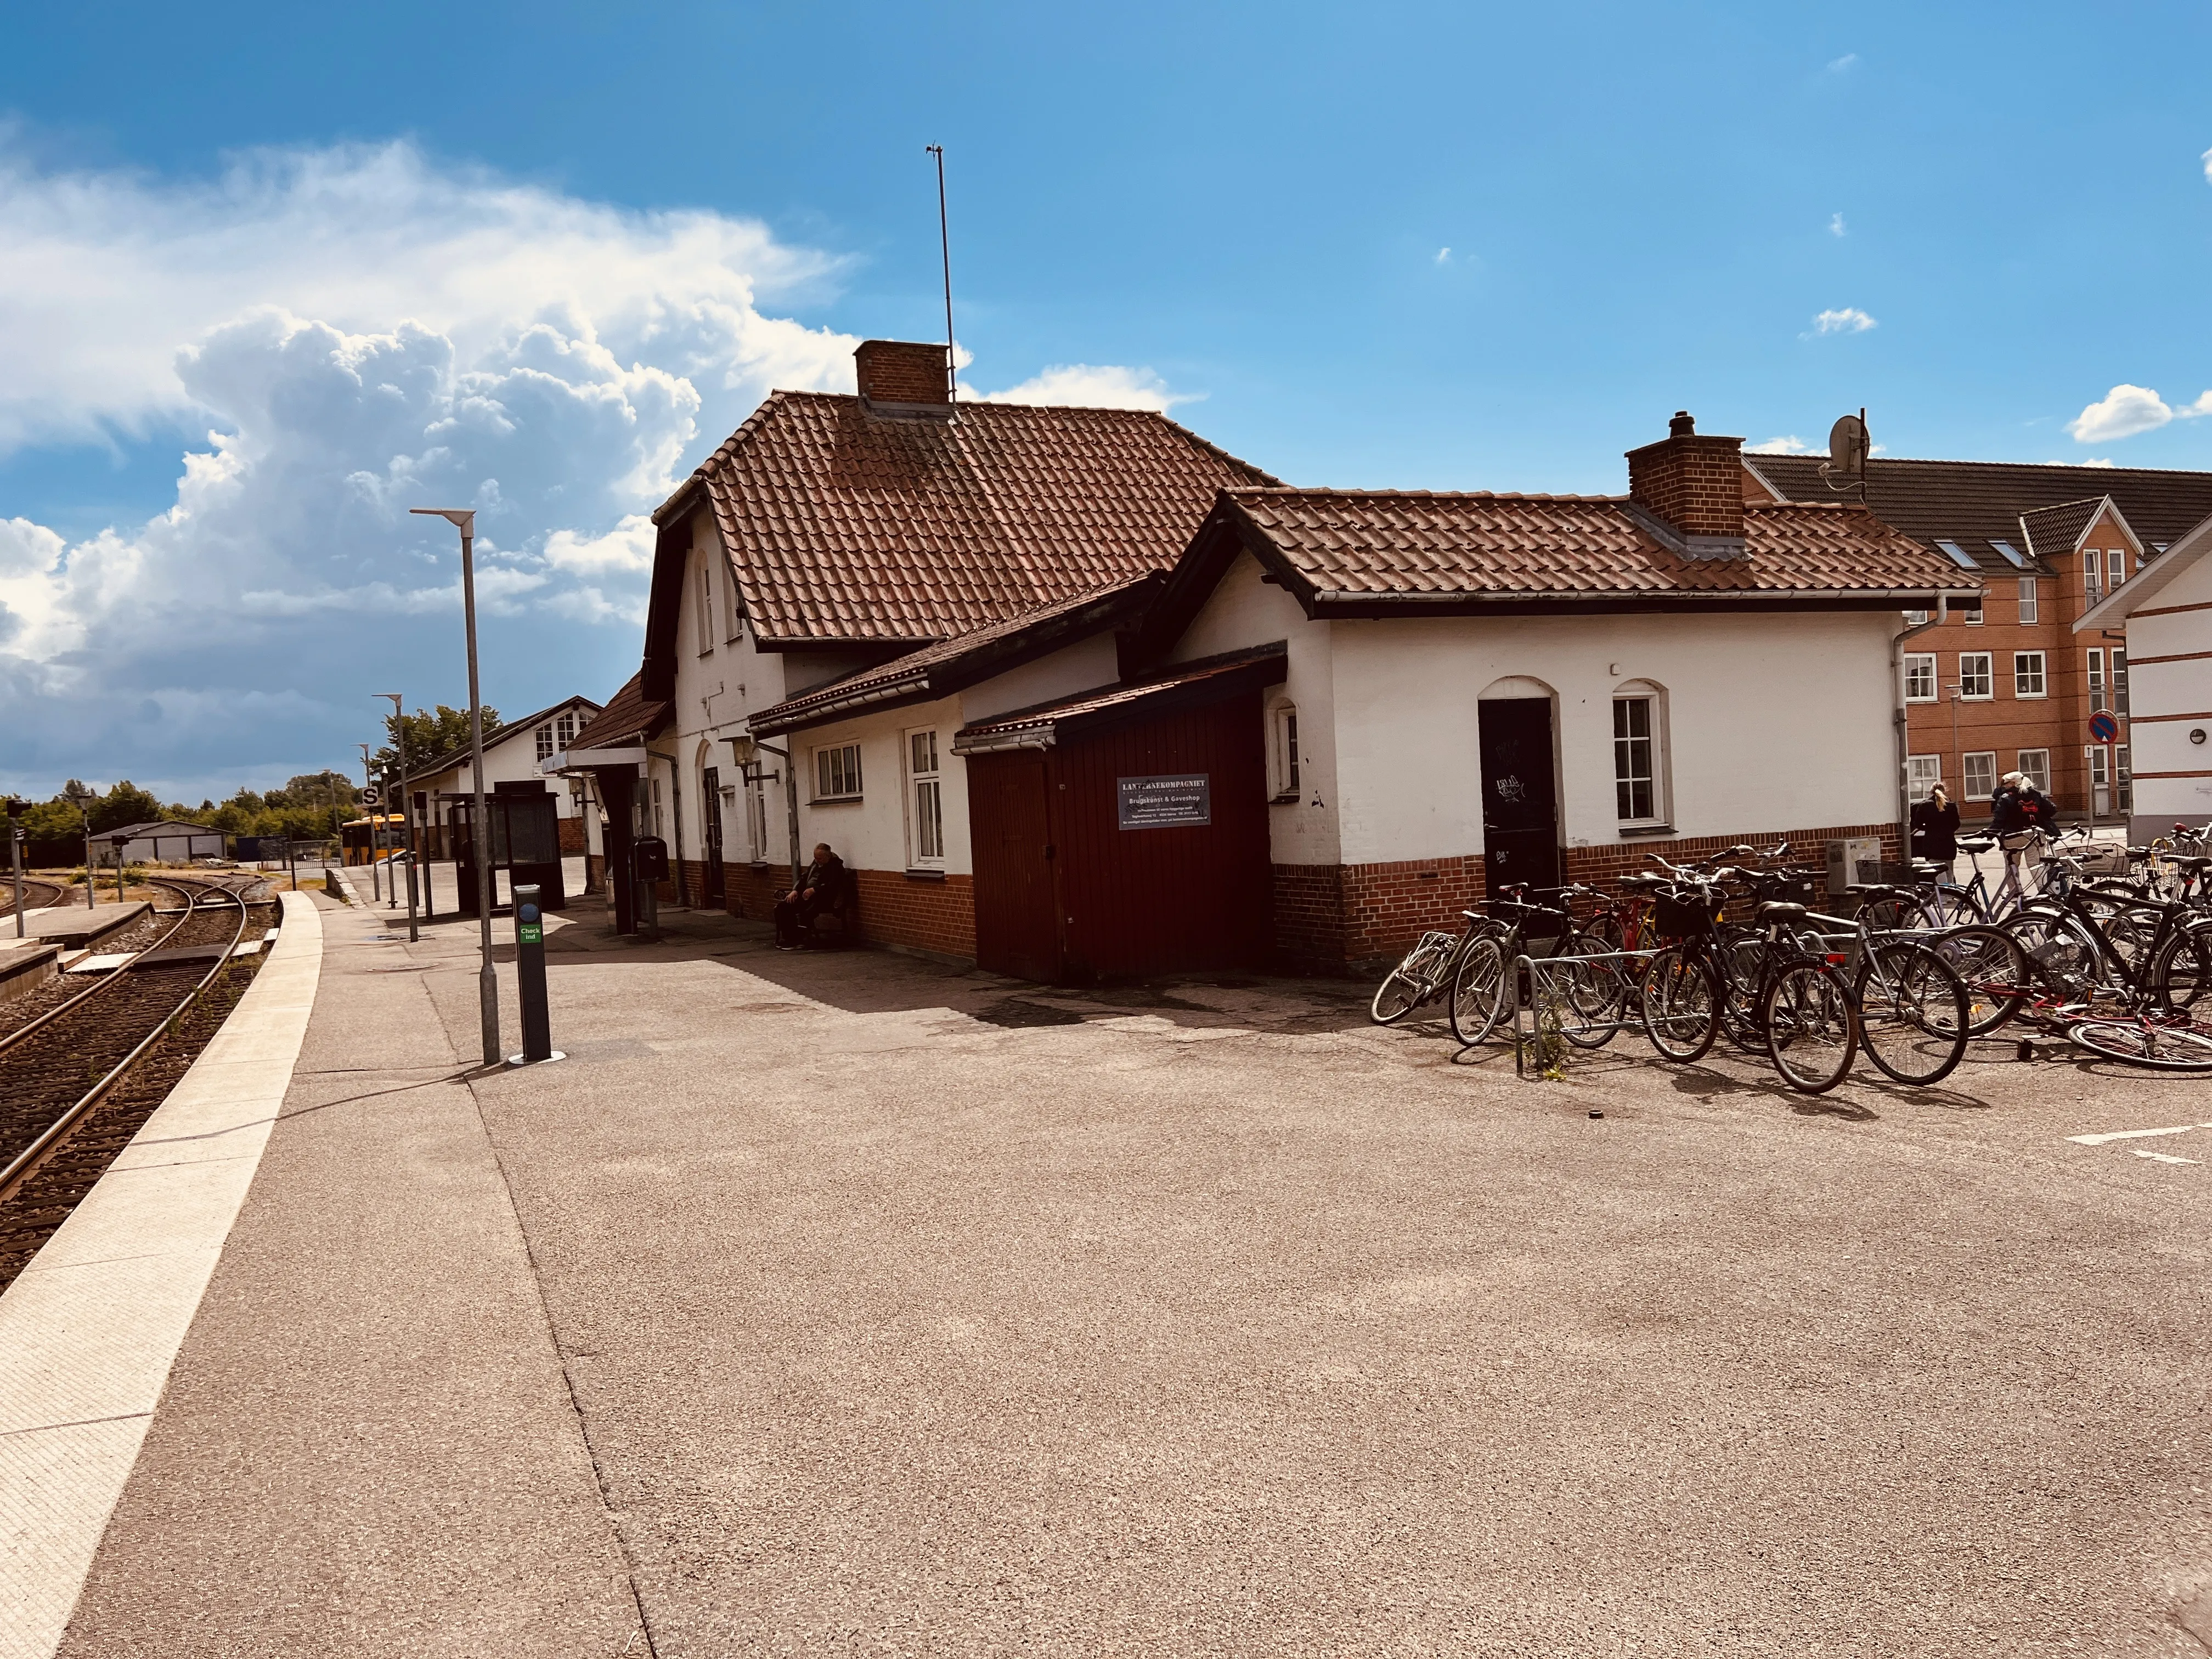 Billede af Hørve Station.